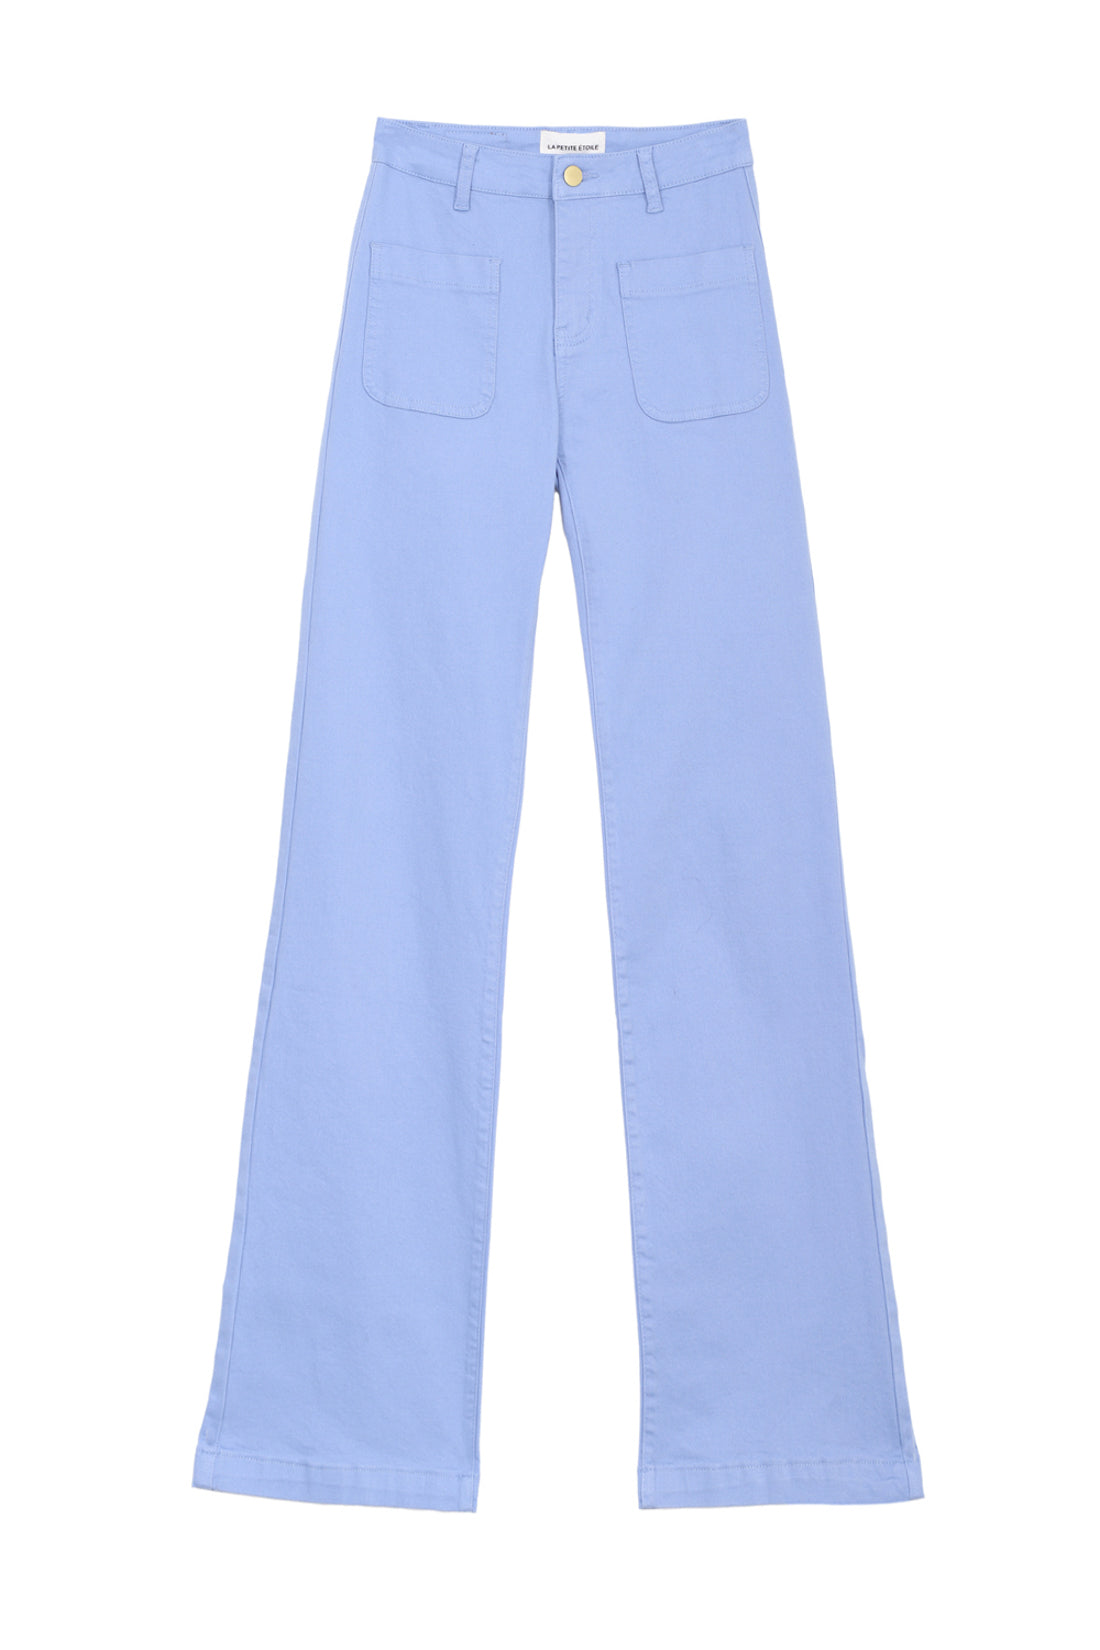 Pantalon Sonny T - Bleu Ciel